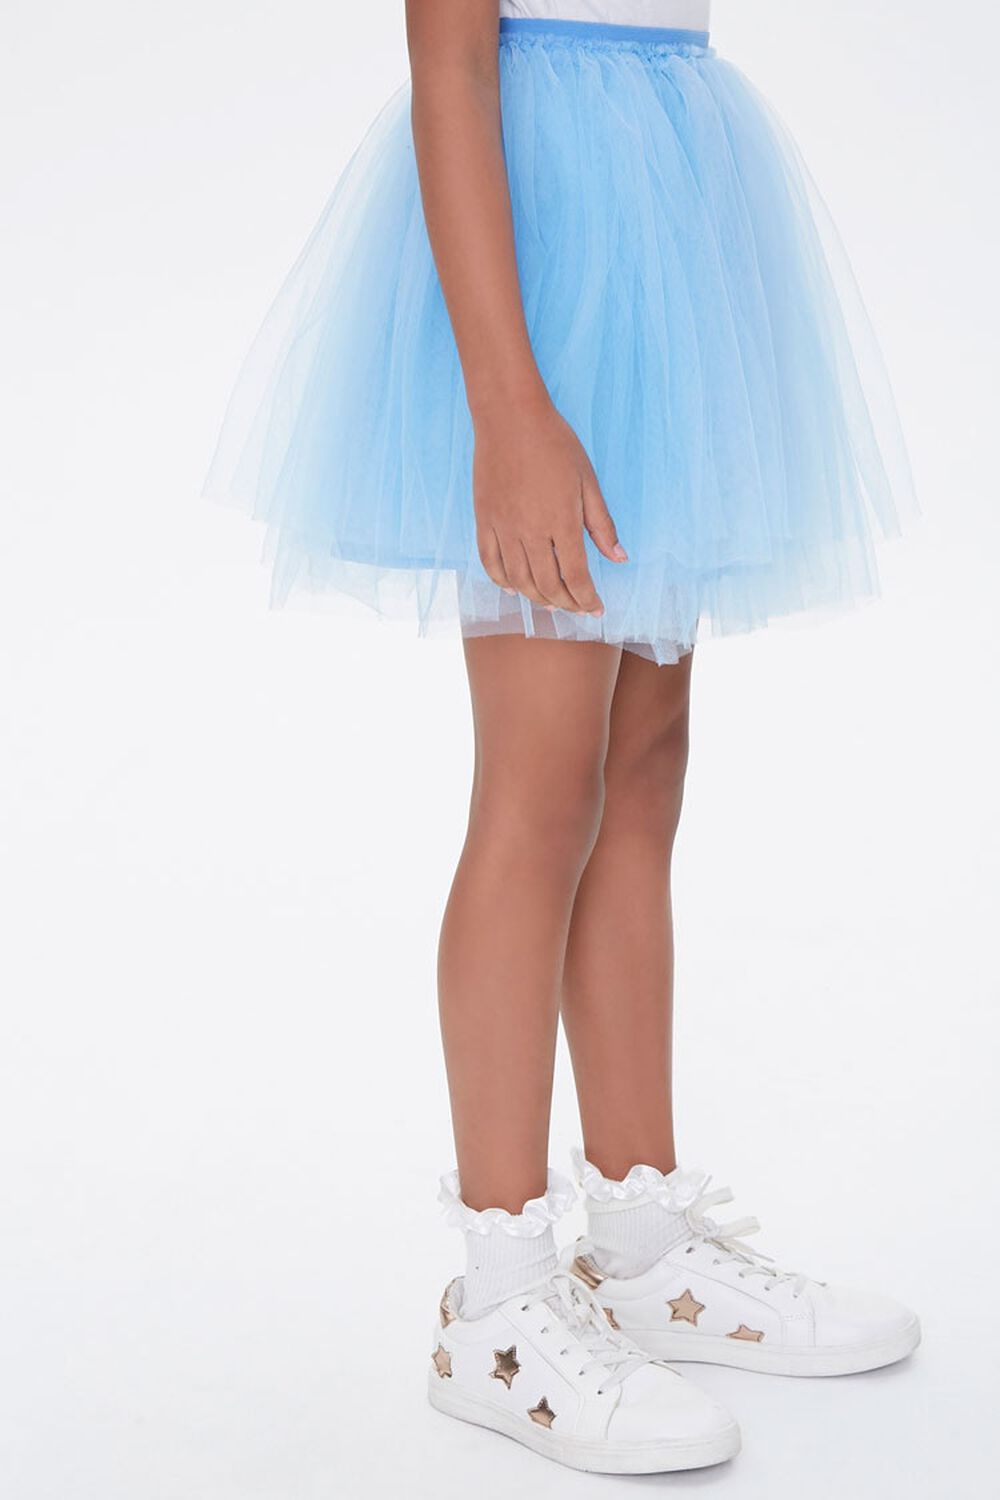 BLUE Girls Tulle Ballerina Skirt (Kids), image 3